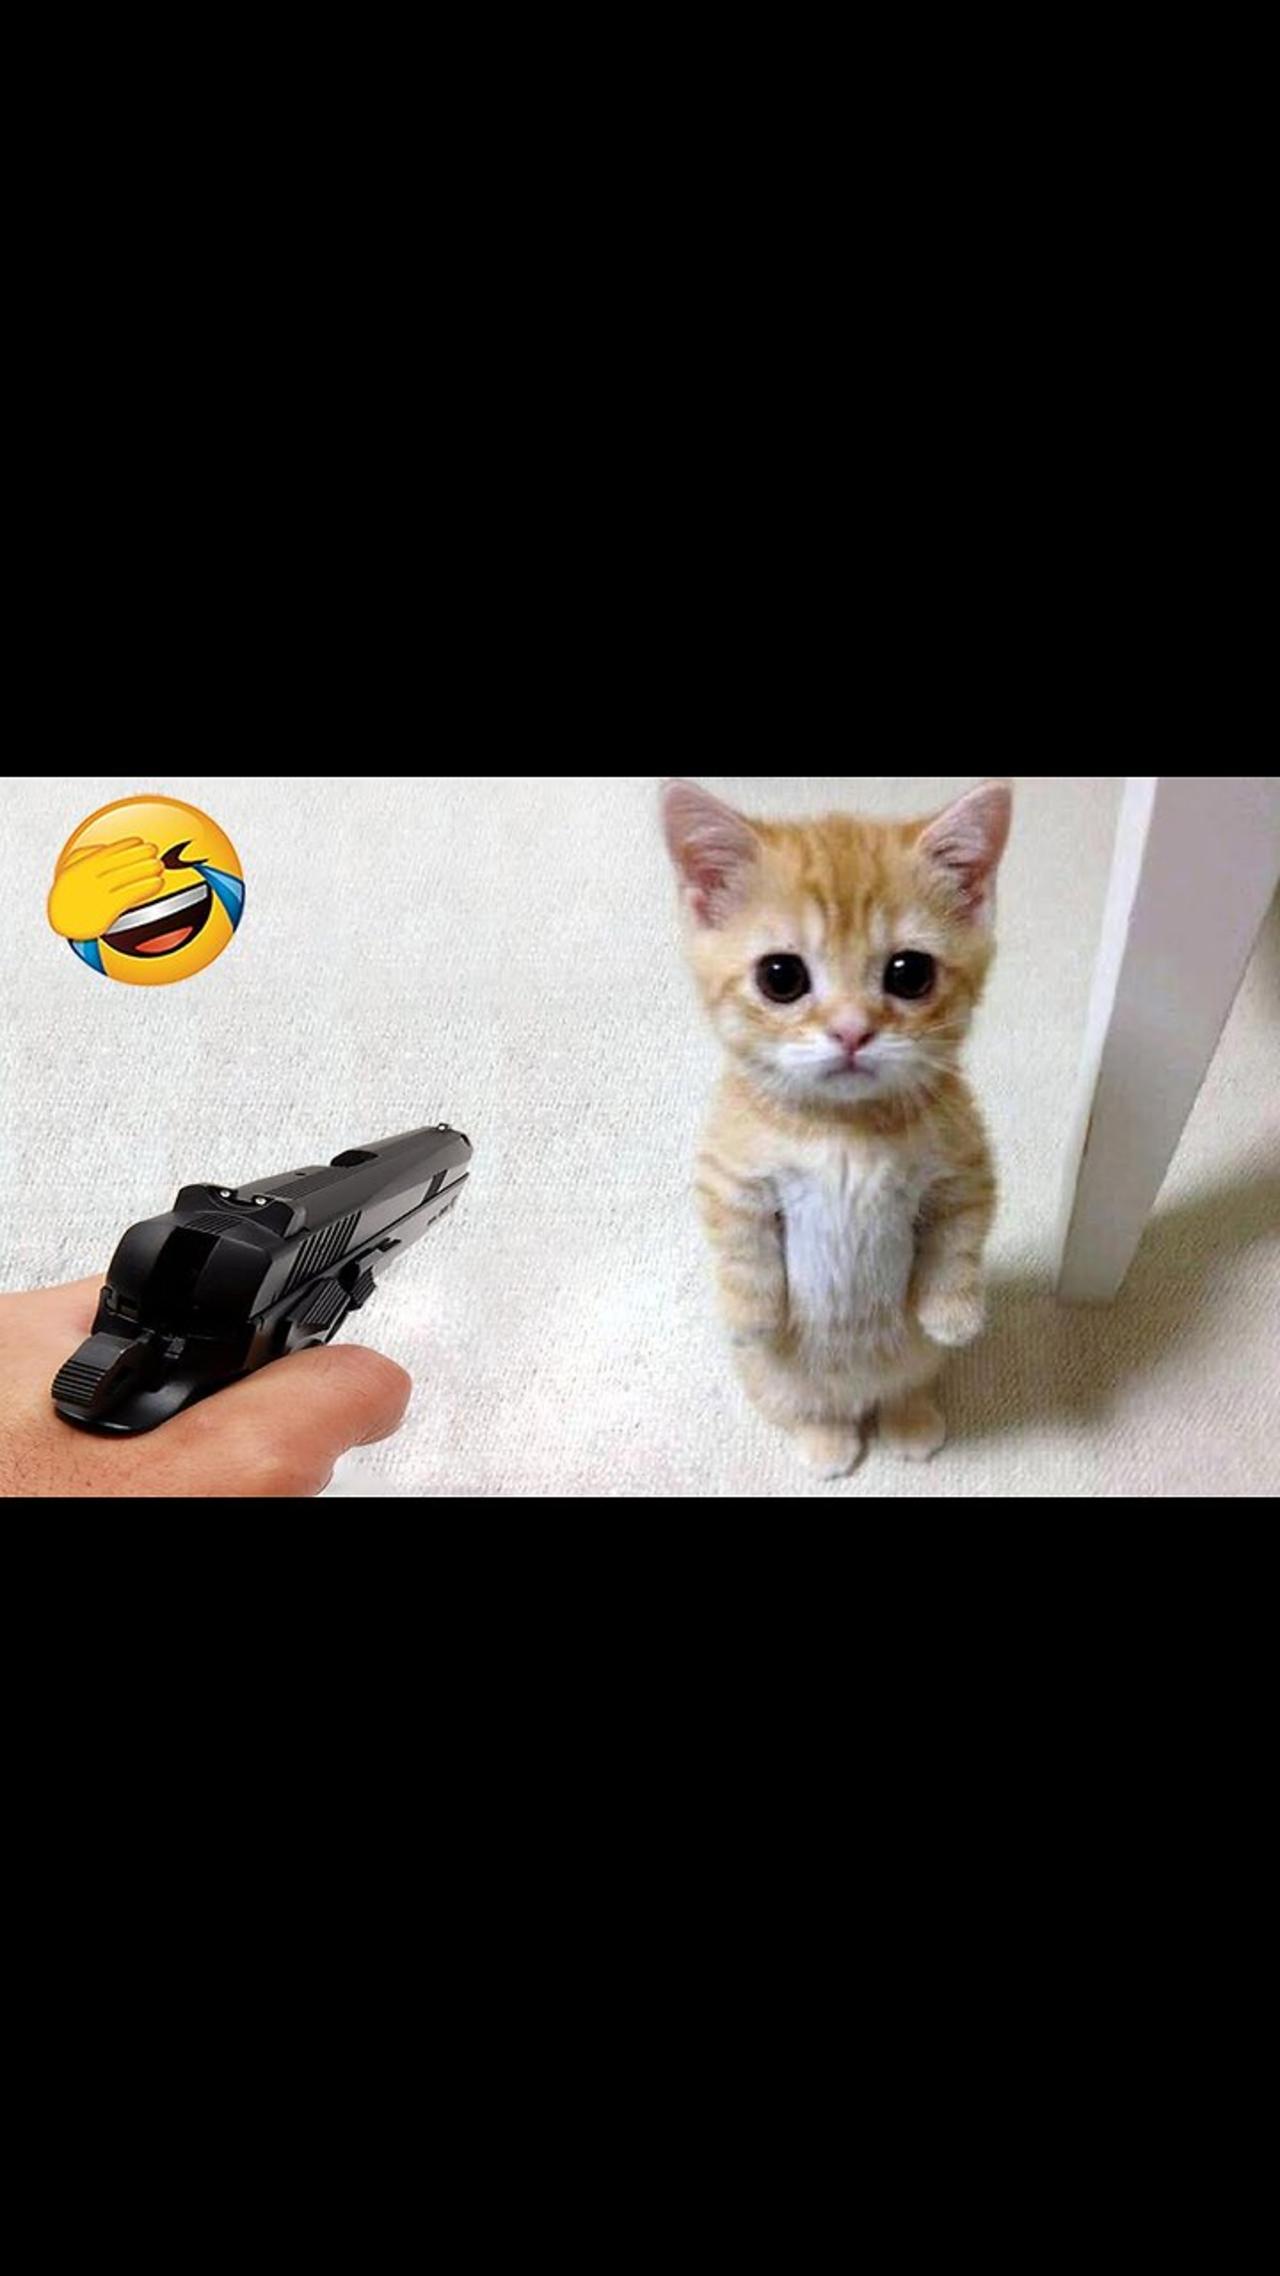 Cute 🥰 cat 🐈 funny